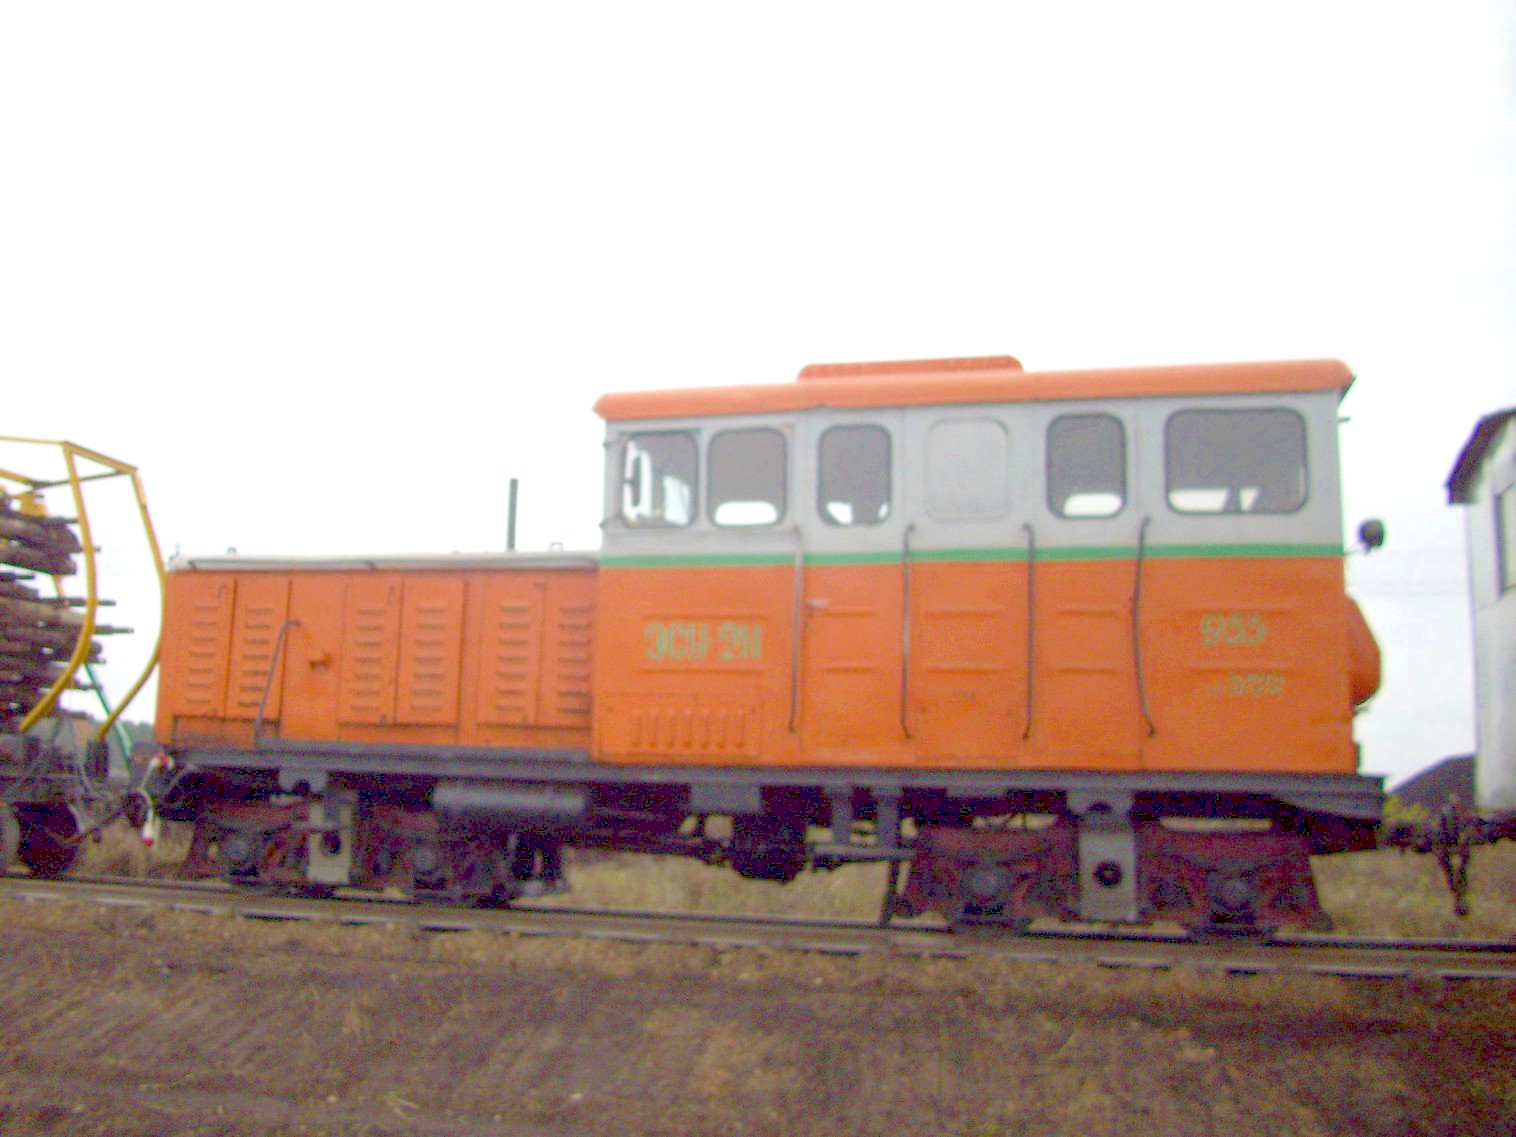 Узкоколейная  железная дорога торфопредприятия «Дитва»   —  фотографии, сделанные в 2011 году (часть 16)